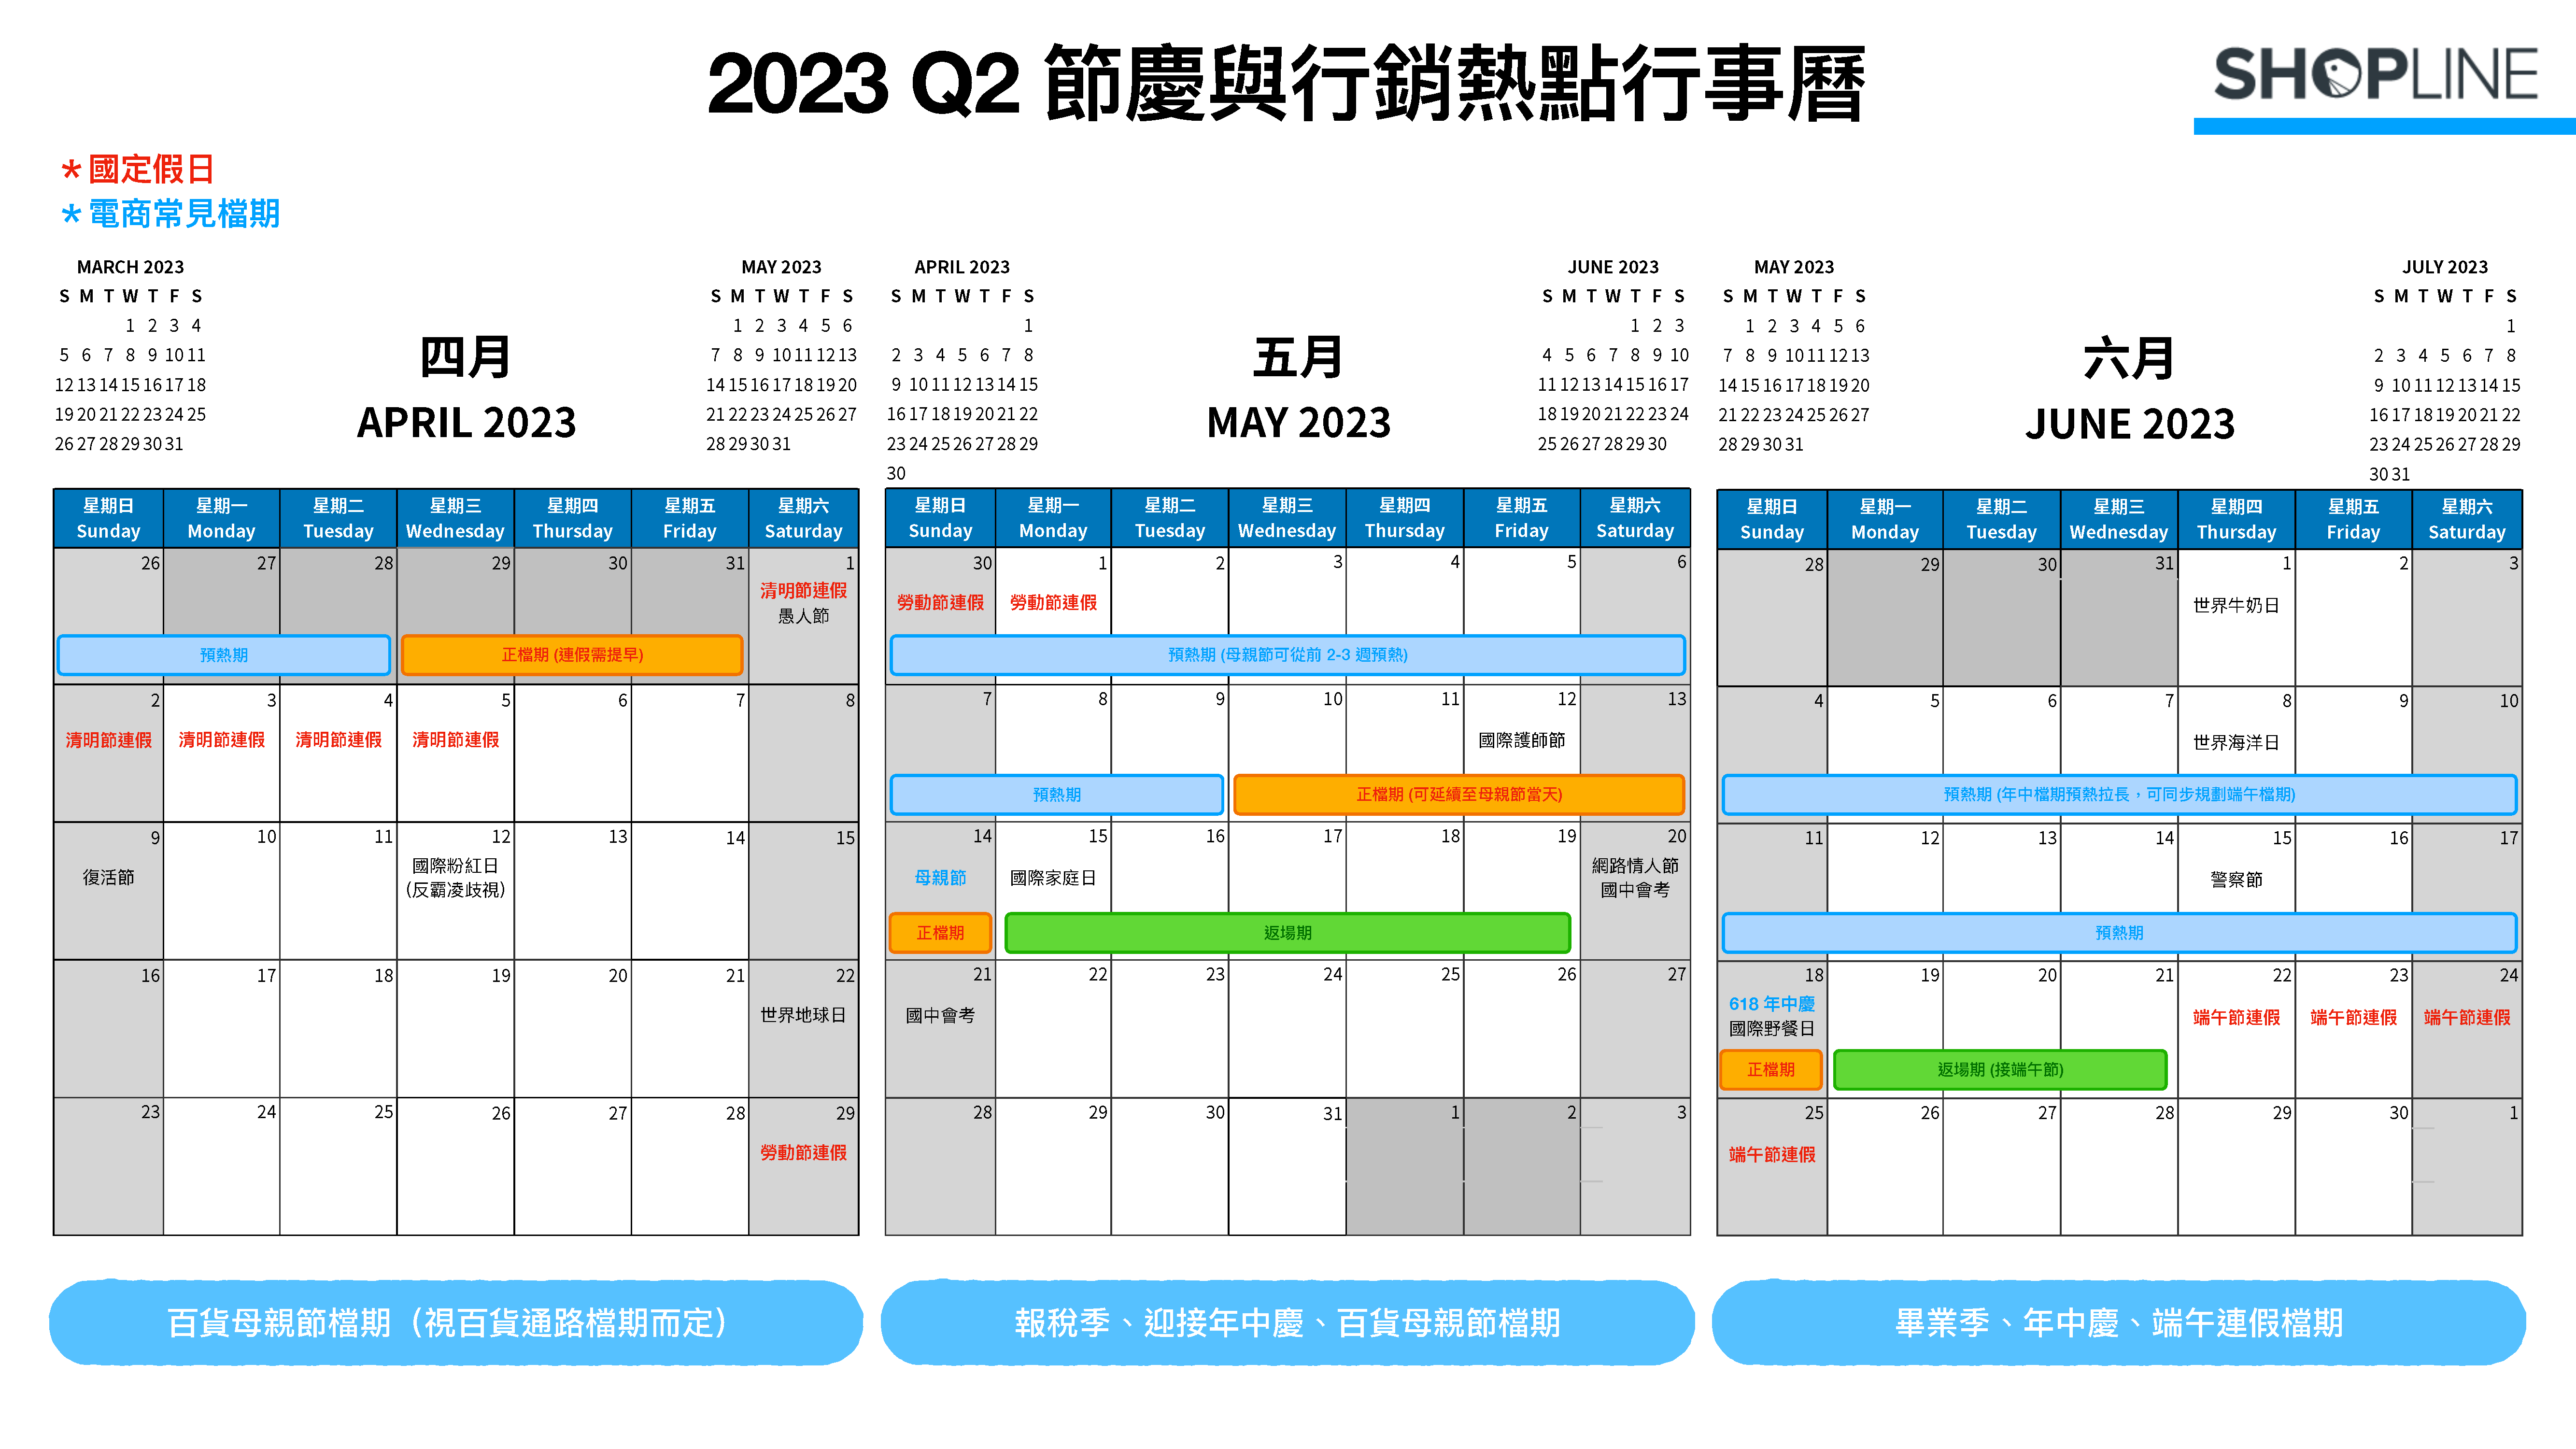 2023 Q2 節慶與行銷熱點月曆